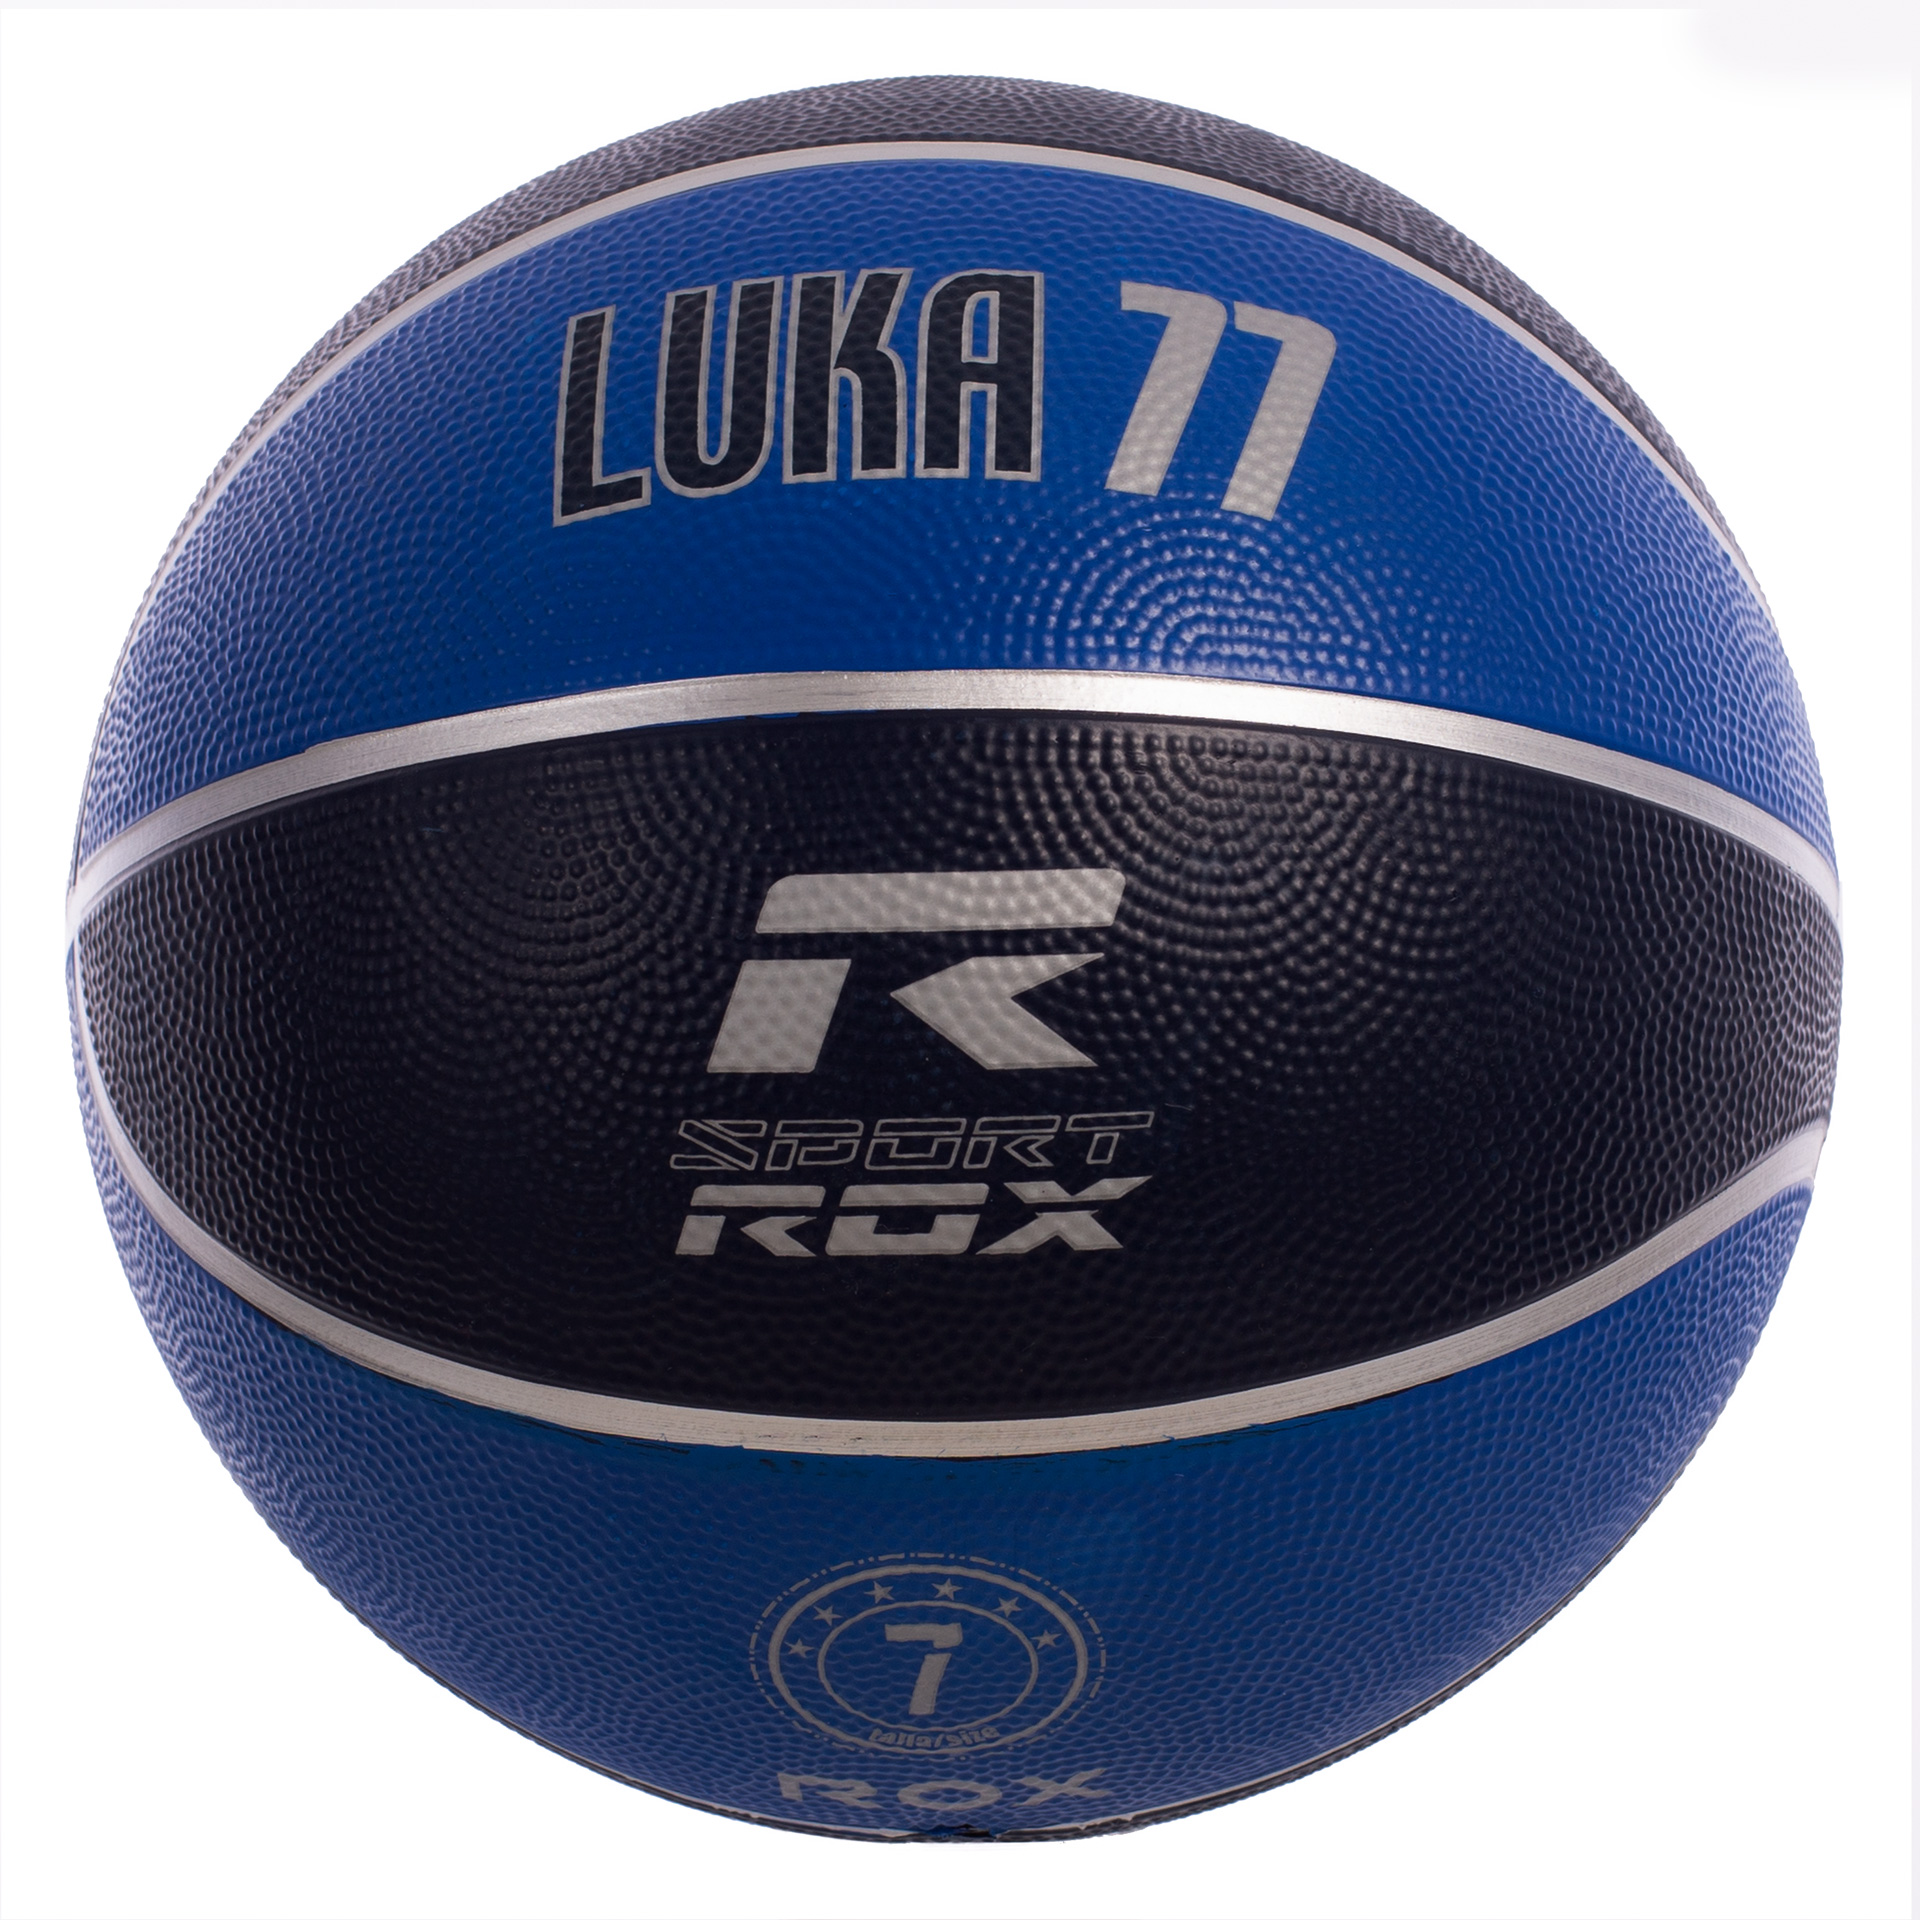 balón baloncesto nylon rox luka 7 2